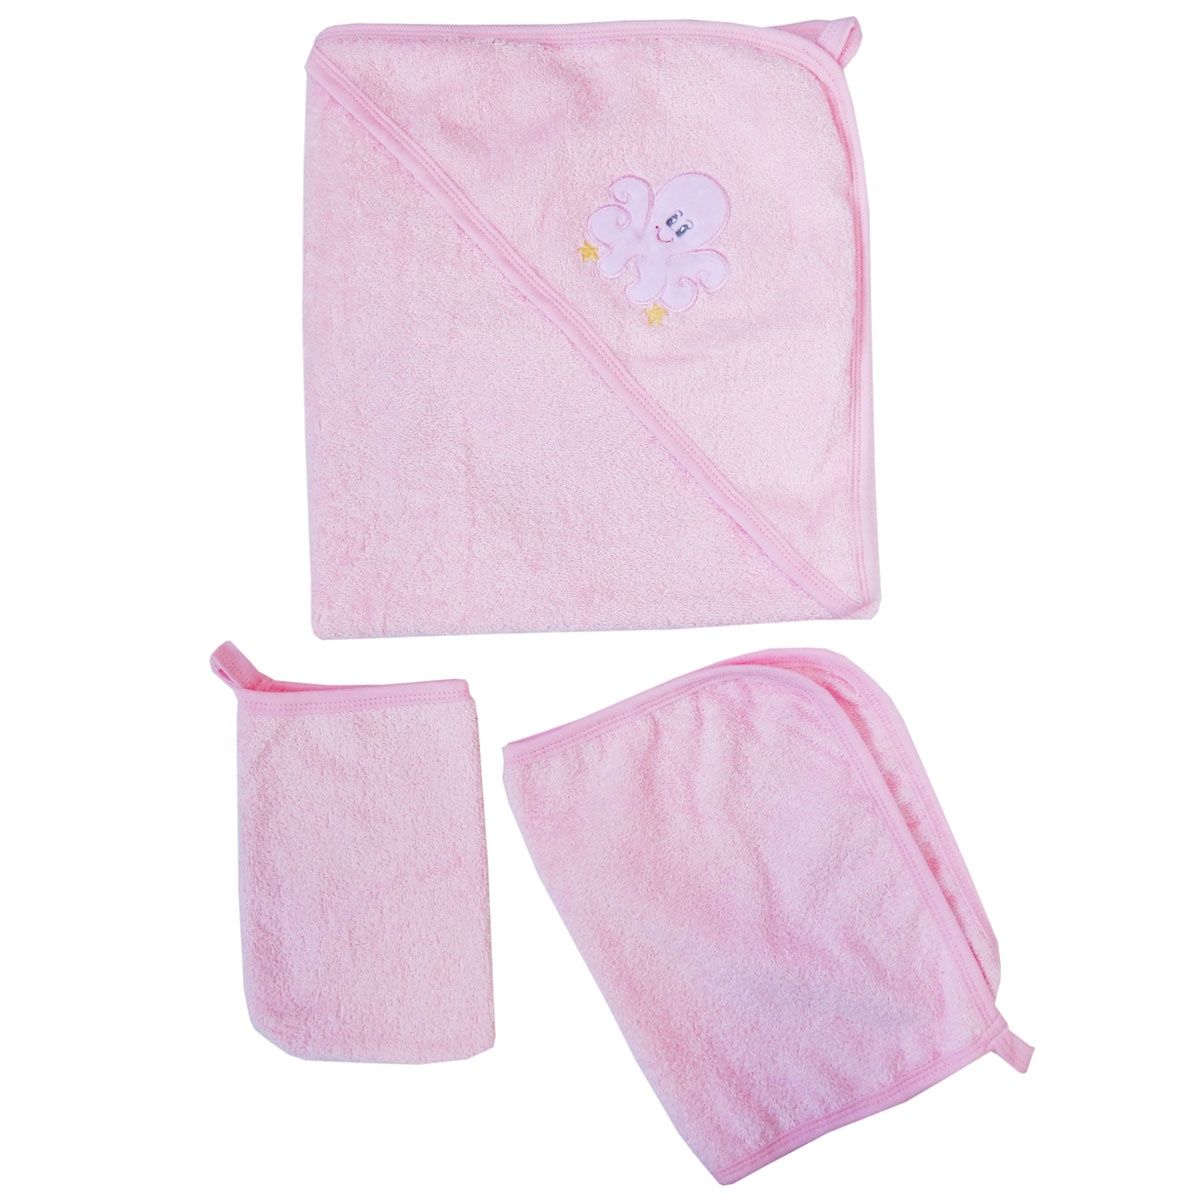 Комплект для купания Набор для купания 3 предмета с вышивкой 3111, розовый